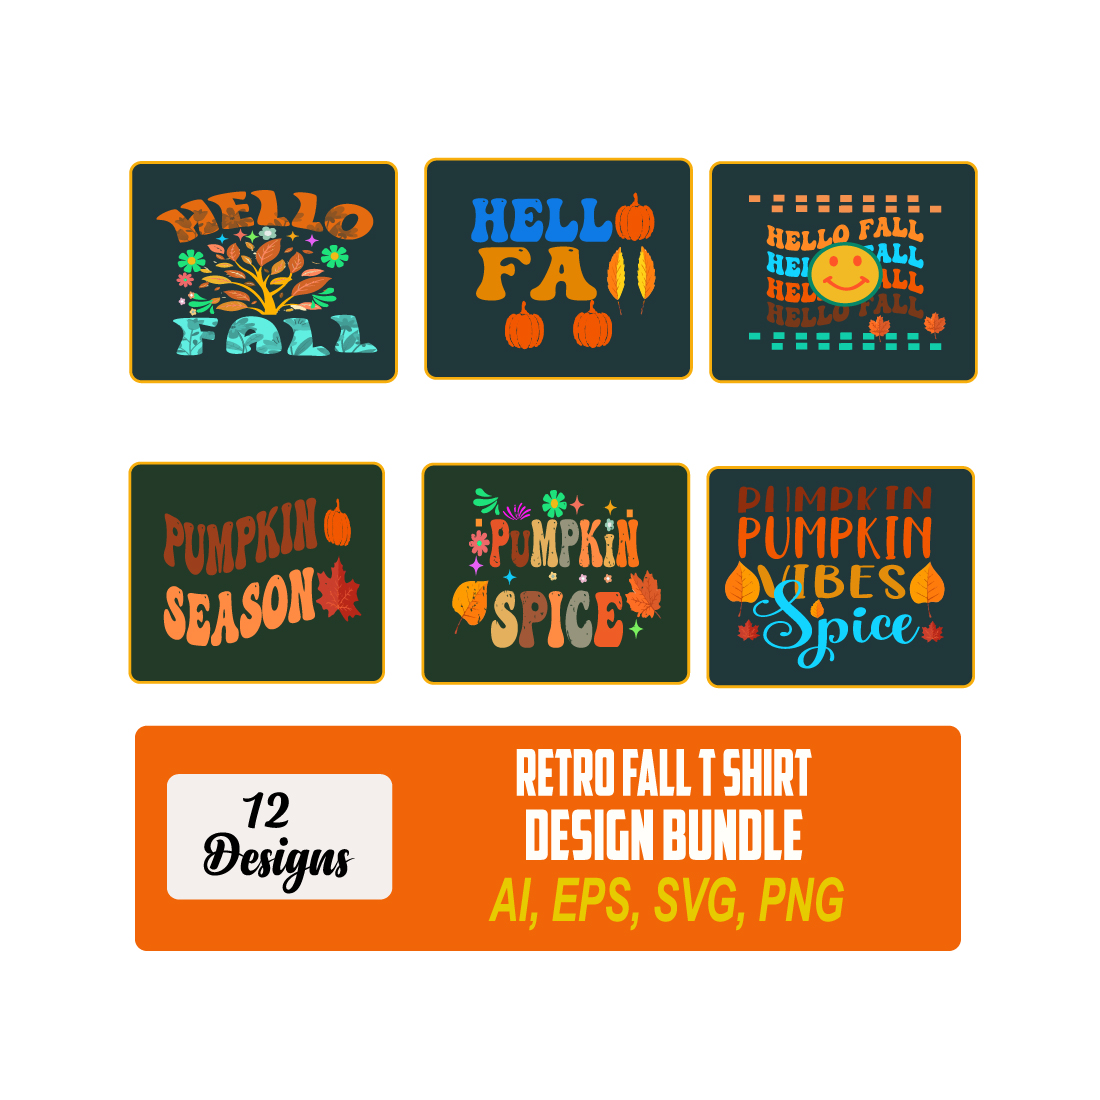 Retro Fall T Shirt Design Bundle - 12 Design preview image.